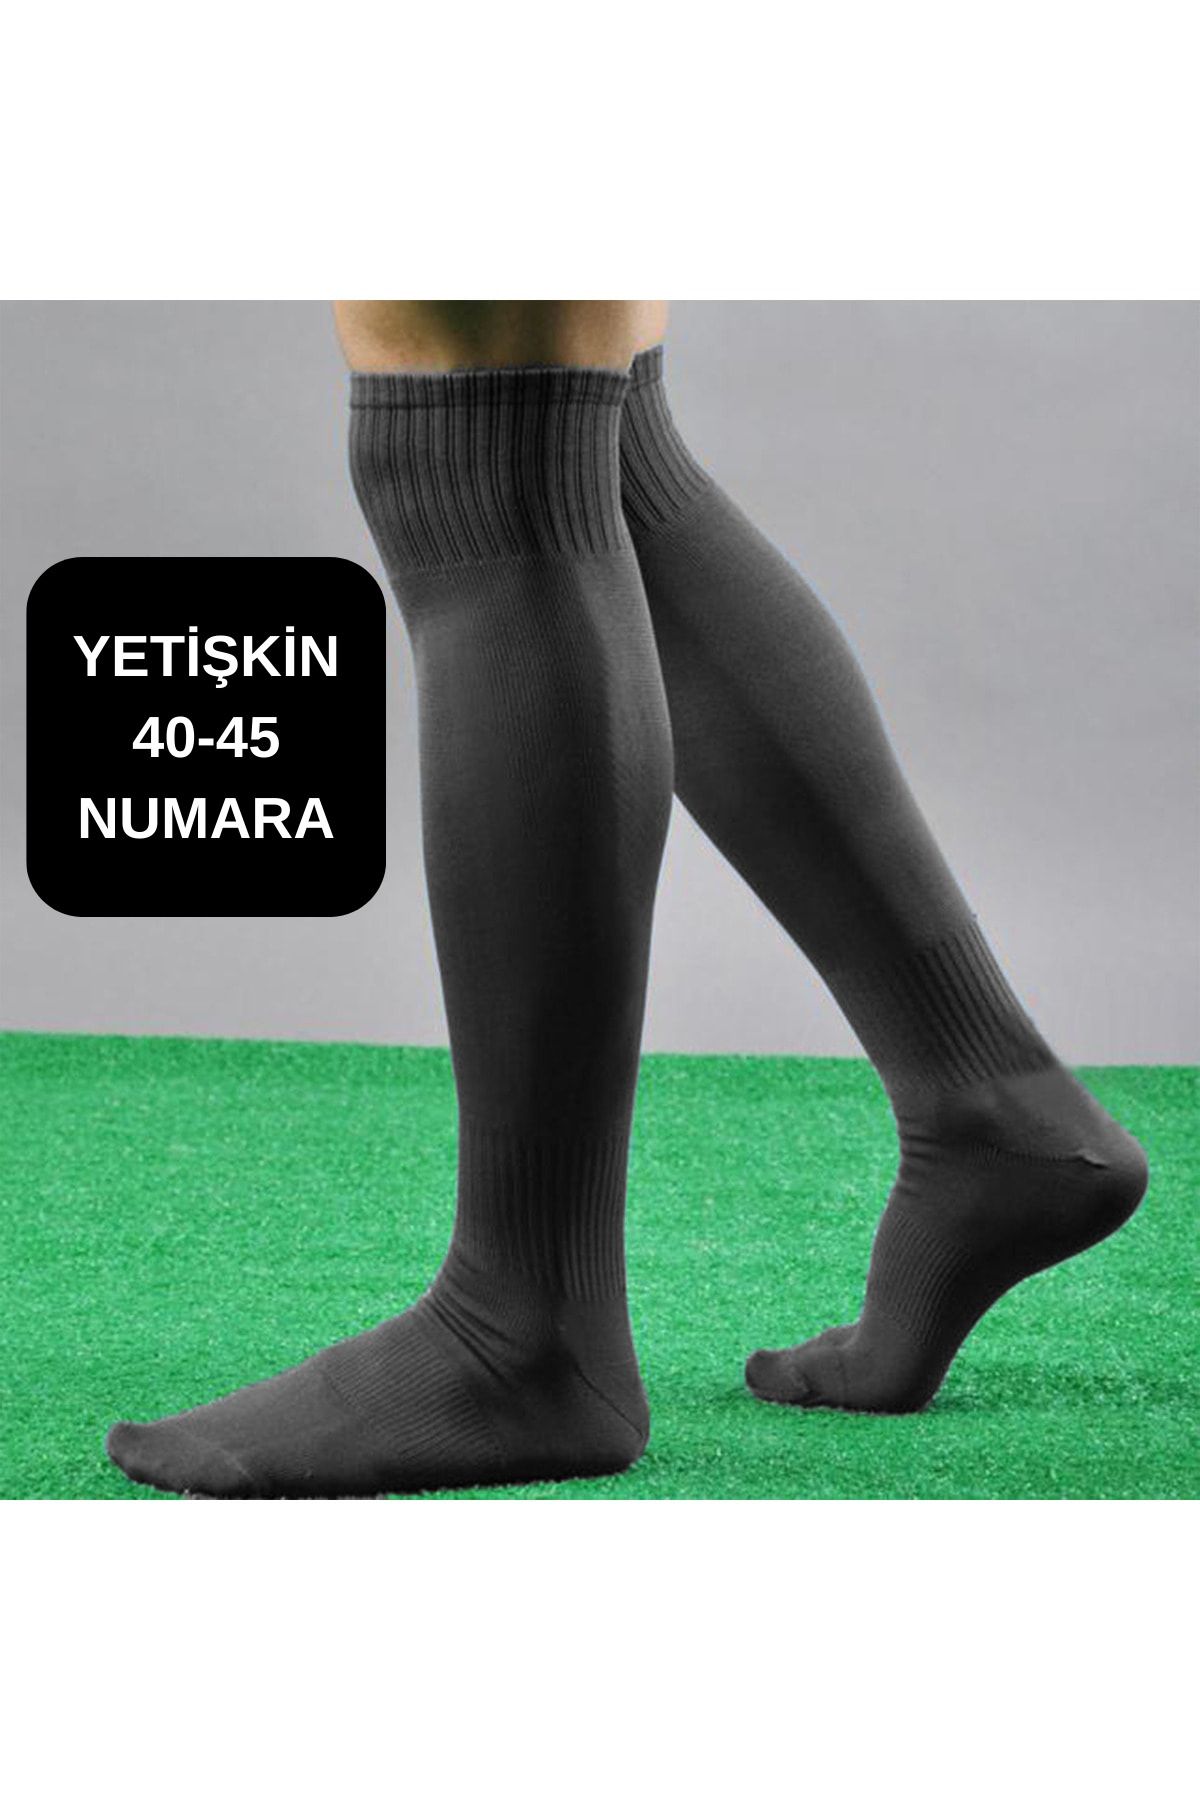 GAZELMANYA Yetişkin Futbol Maç Çorabı 40-45 Futbol Tozluk Futbol Halısaha Çorabı Konç Halı Saha Çorabı